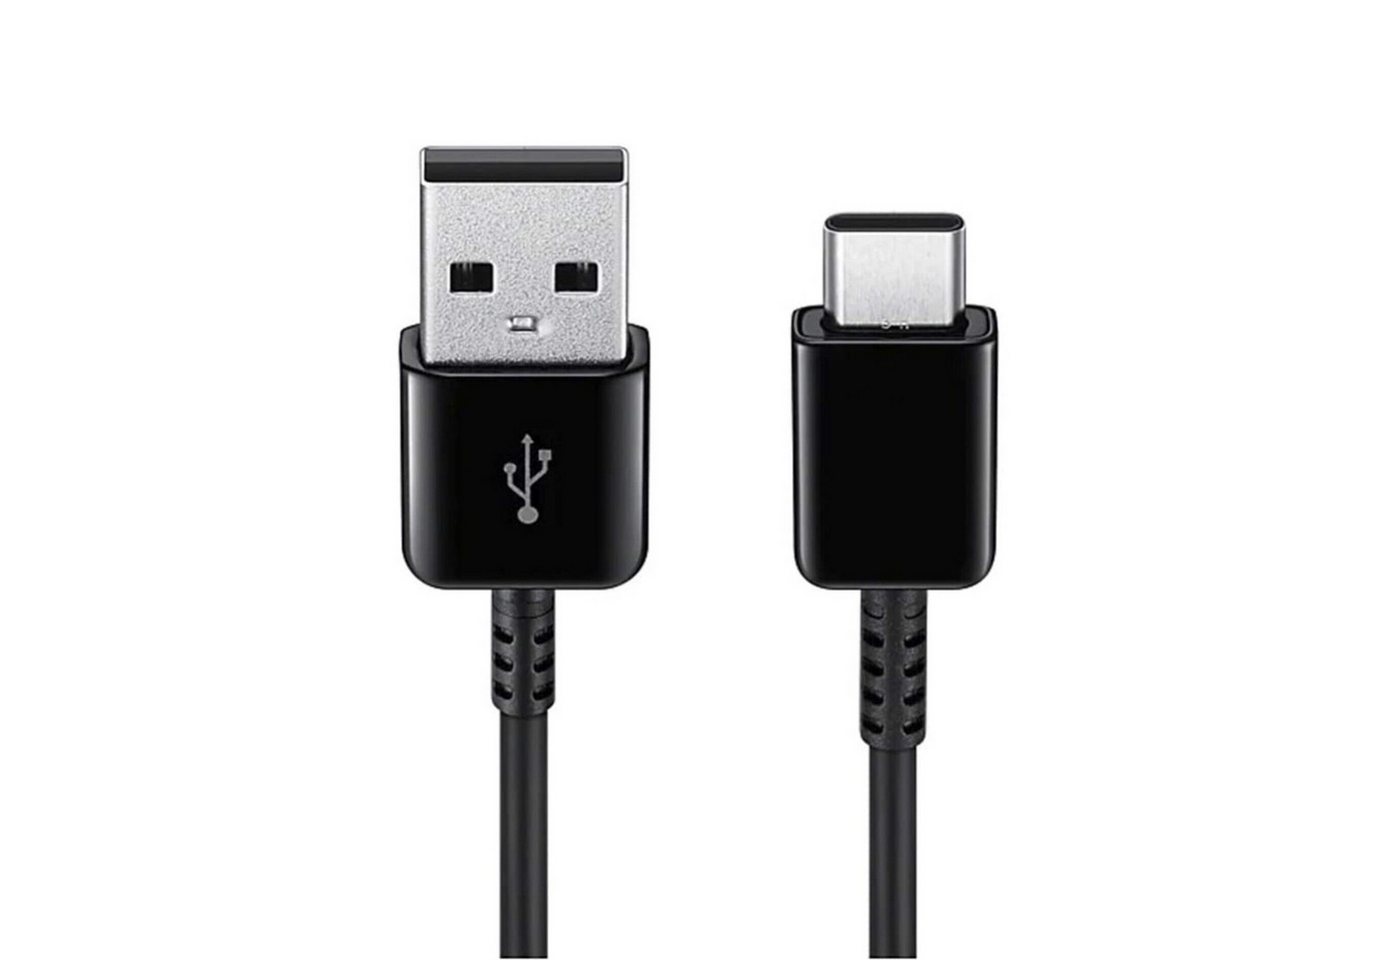 IK-Handelsgruppe EP-DG950CBE Schnellladekabel für Samsung Smartphone-Kabel, USB-C, USB Typ A (120 cm) von IK-Handelsgruppe